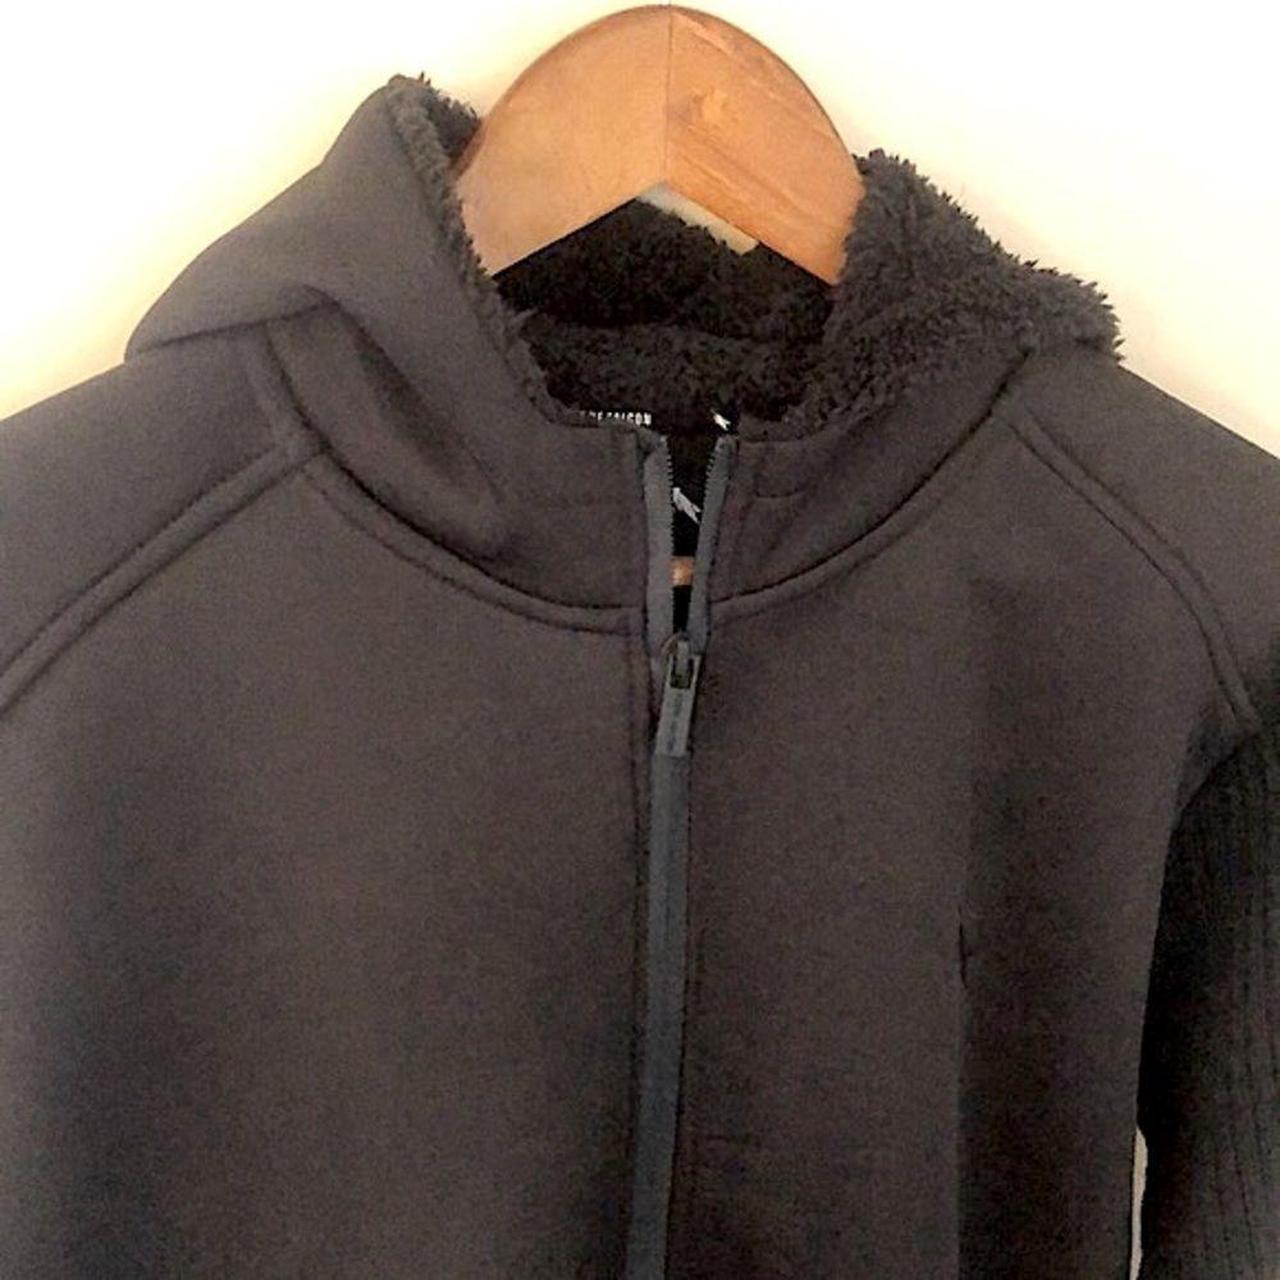 Stone Falcon black hoodie jacket fleece lined full... - Depop